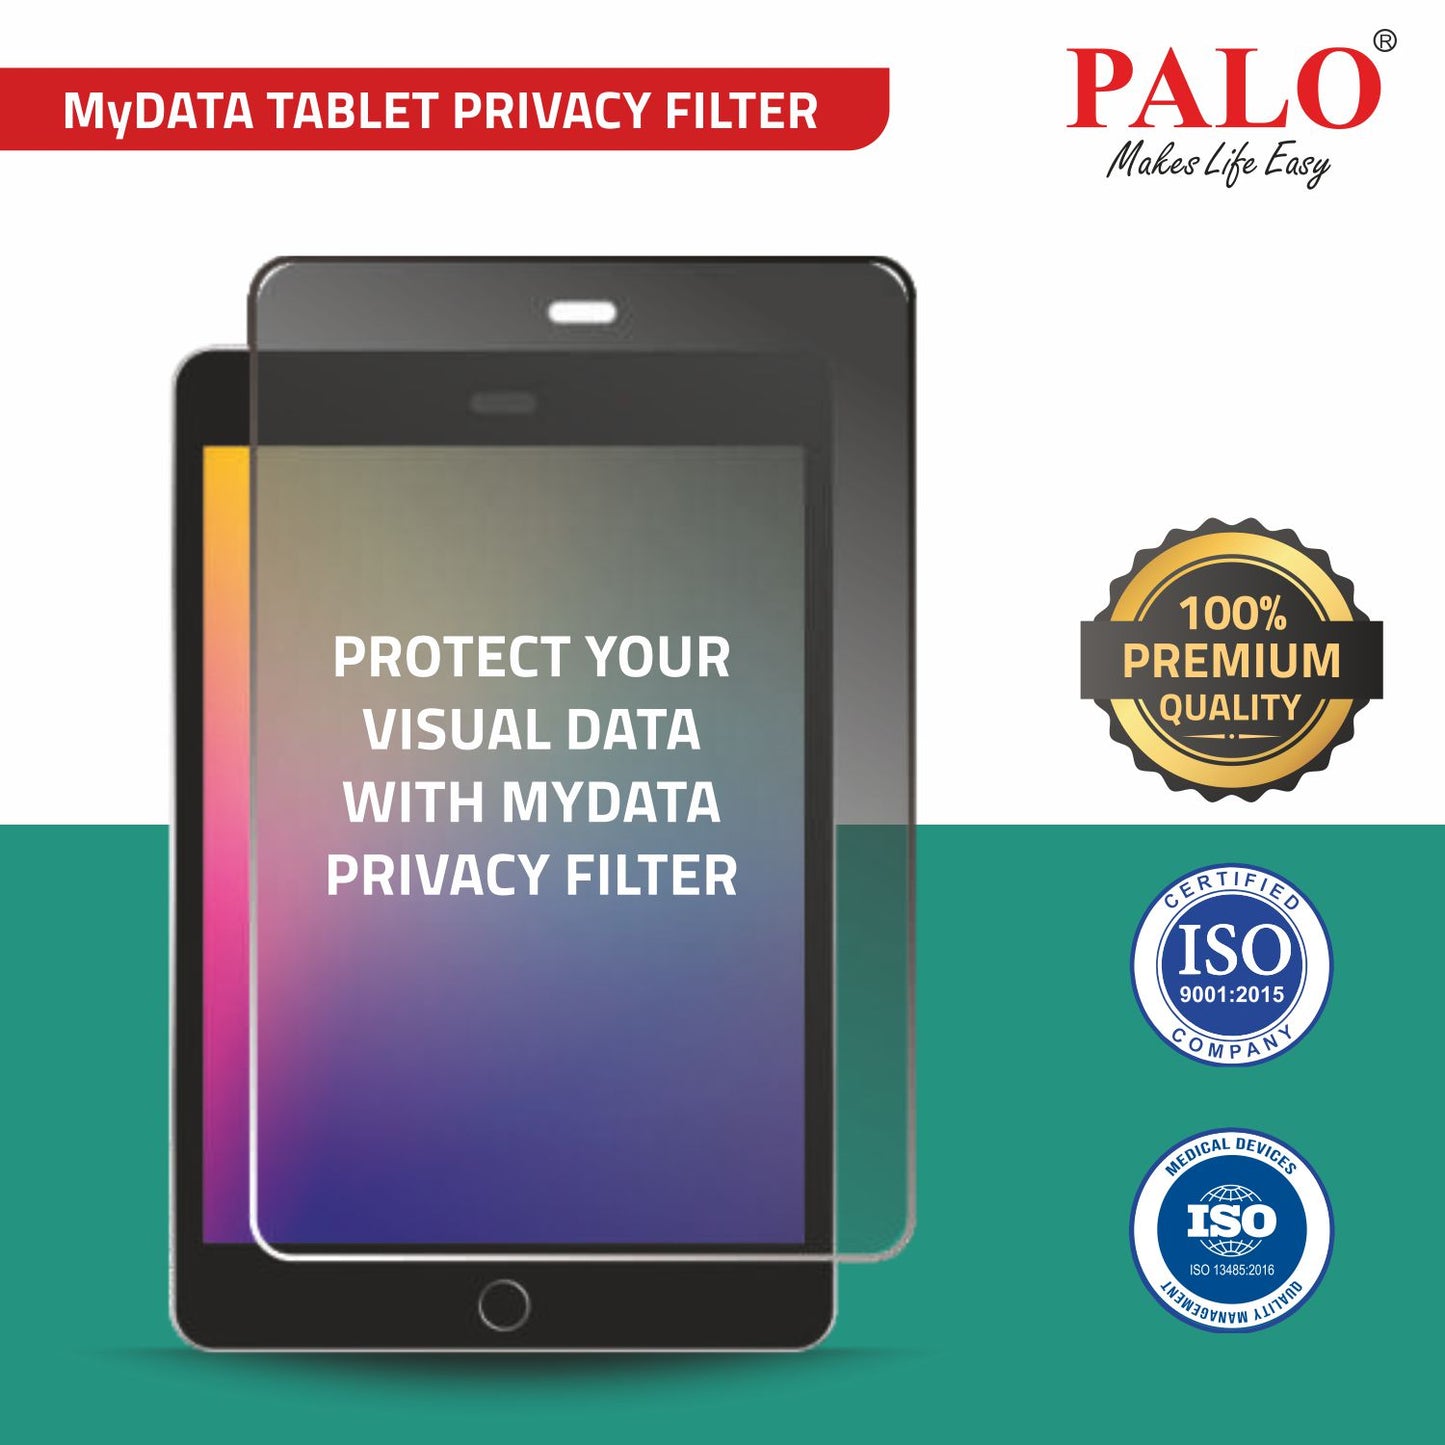 PALO MyDATA Tablet Privacy Filter